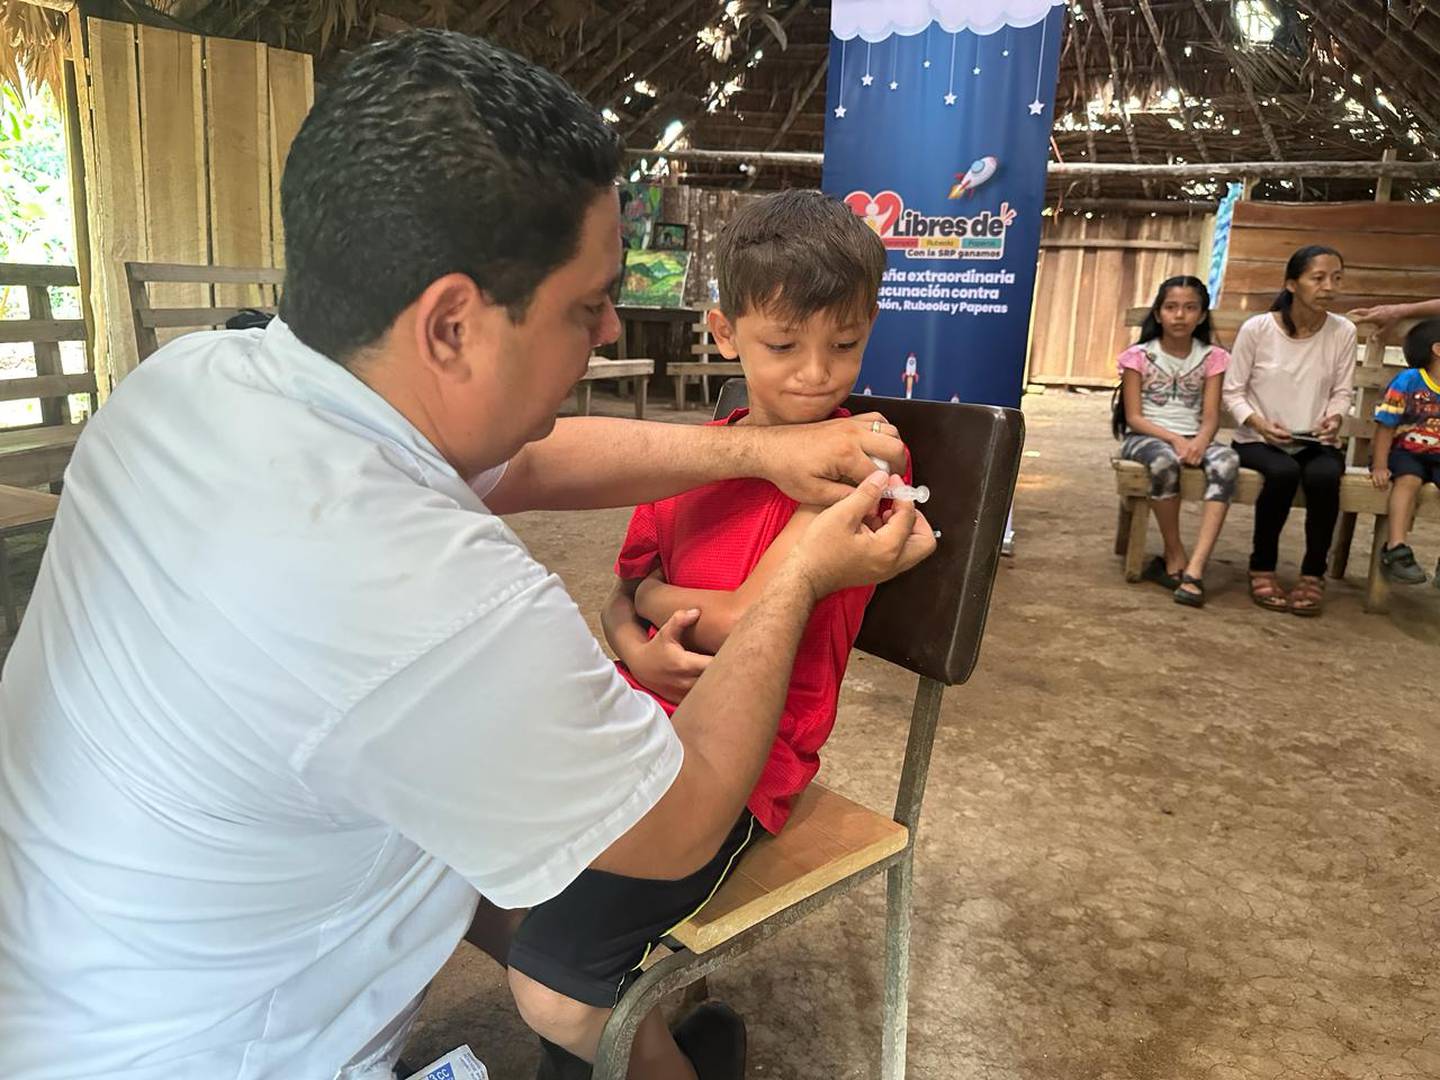 El área de salud Guatuso de la Caja Costarricense de Seguro Social (CCSS) realizó una visita a la comunidad indígena maleku para vacunar a la población mayor de 15 meses y menor de 10 años contra sarampión, rubéola y paperas.